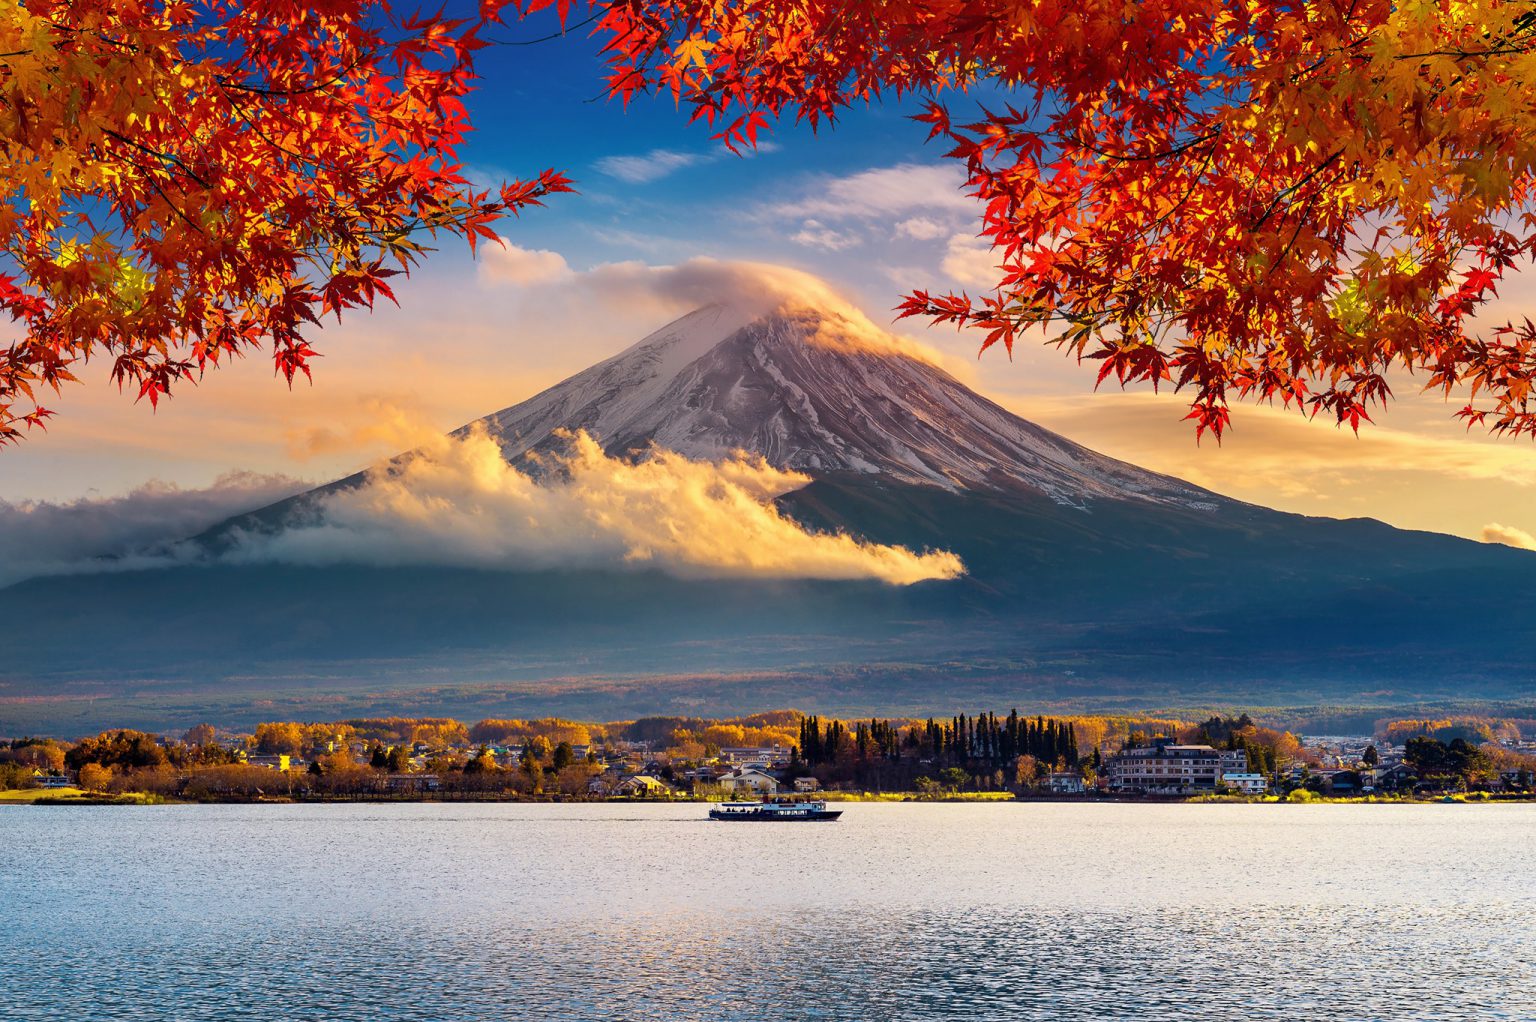 Mount Fuji ภูเขาไฟฟูจิ